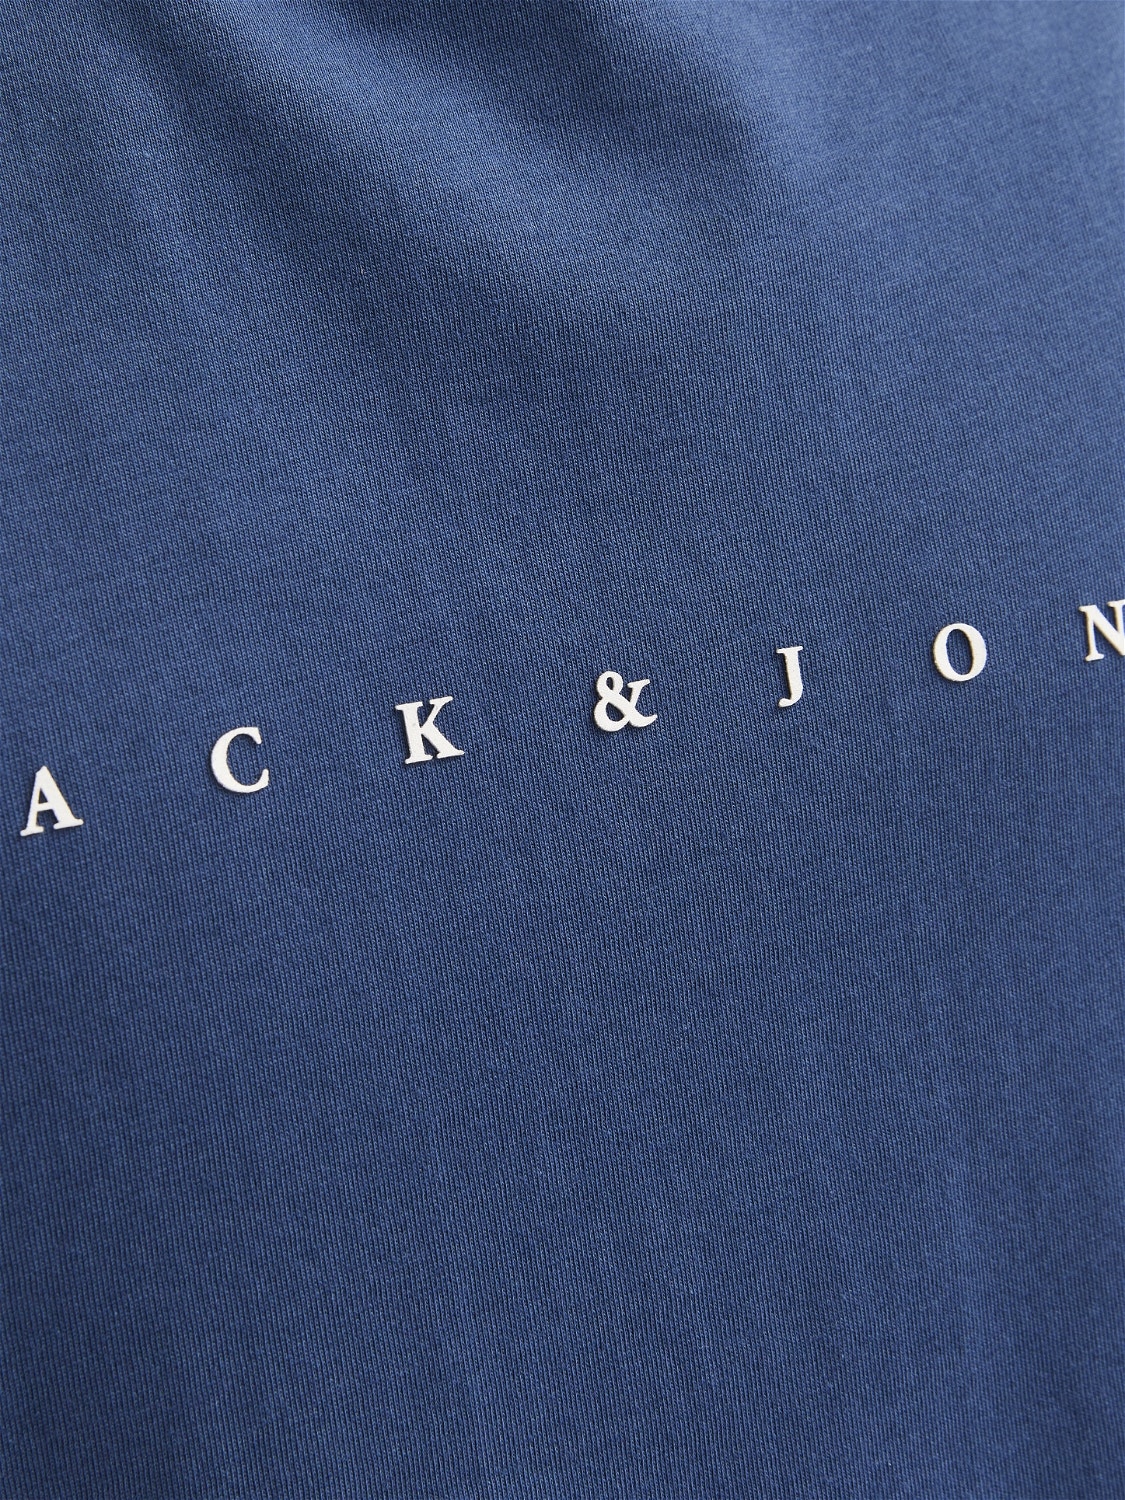 Jack & Jones Débardeur Imprimé Col rond -Ensign Blue - 12249131